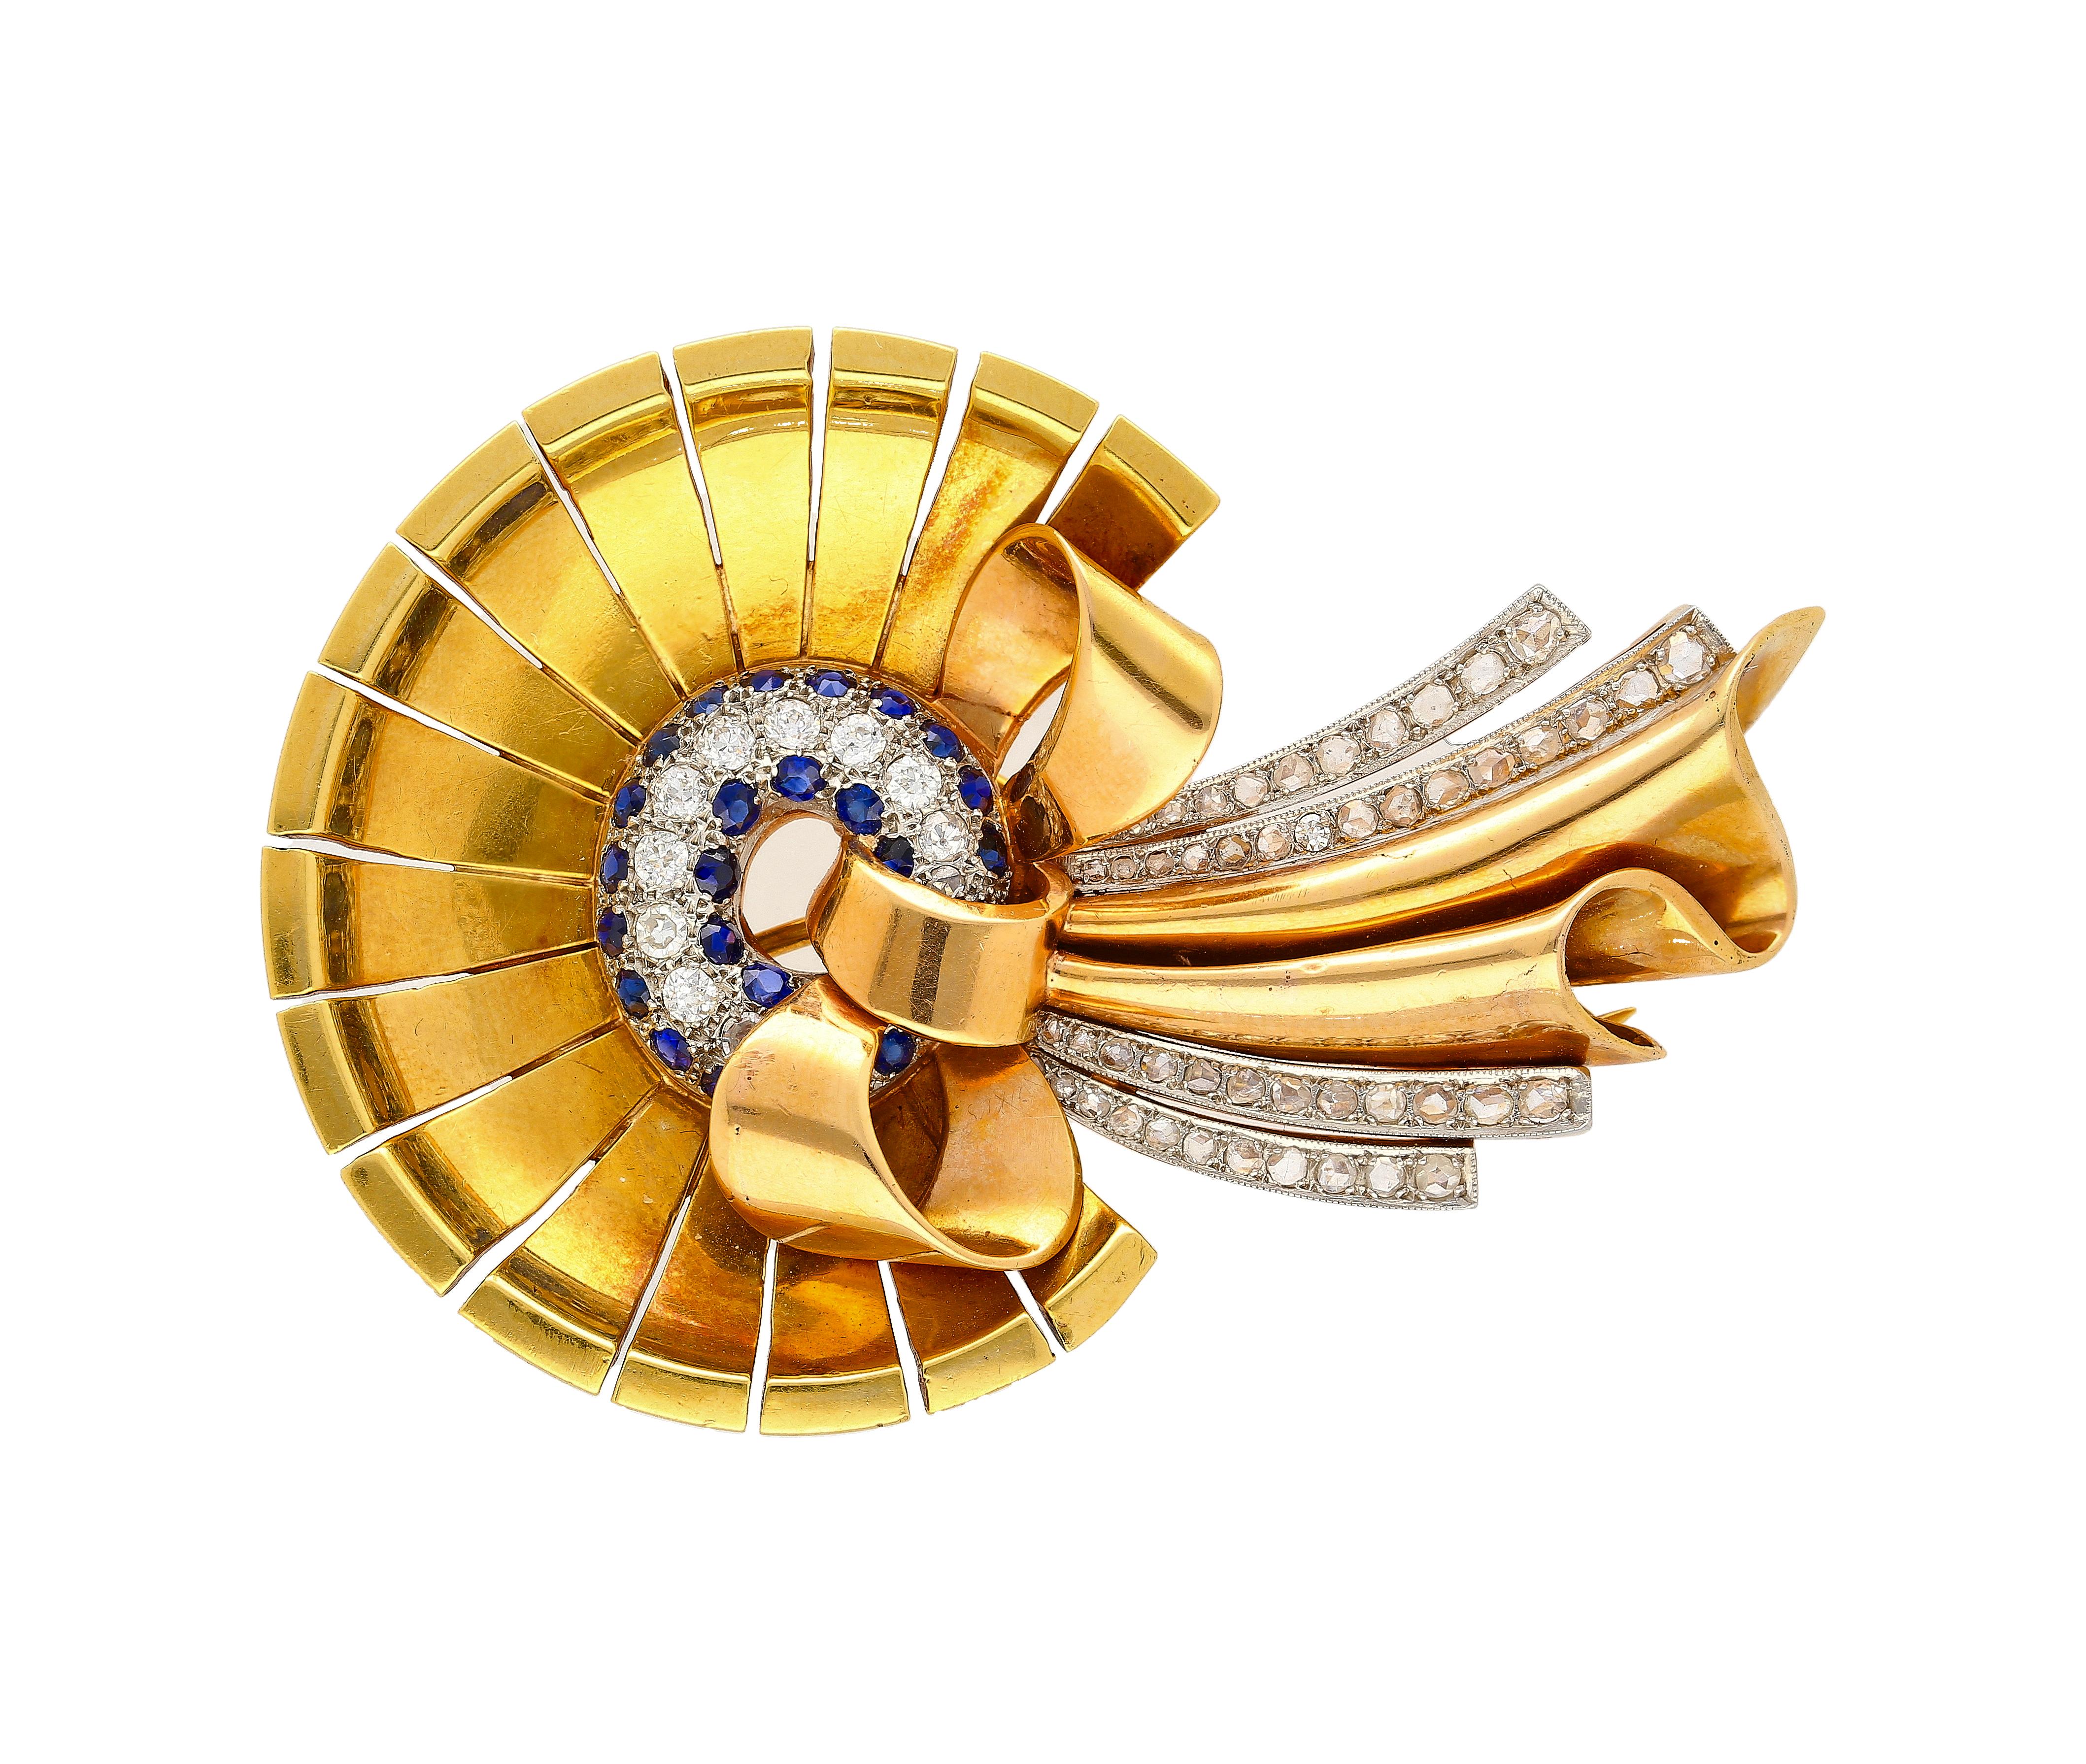 1940er Jahre Diamant und Saphir Bonnet (Hut) und Ribbon Brooch in 18K Rose und Gelbgold gefertigt. Diese exquisite Brosche wiegt 34,86 Gramm und ist mit einer Zackenfassung versehen, die bei einer Größe von 6,8 x 4,5 cm raffinierte Details